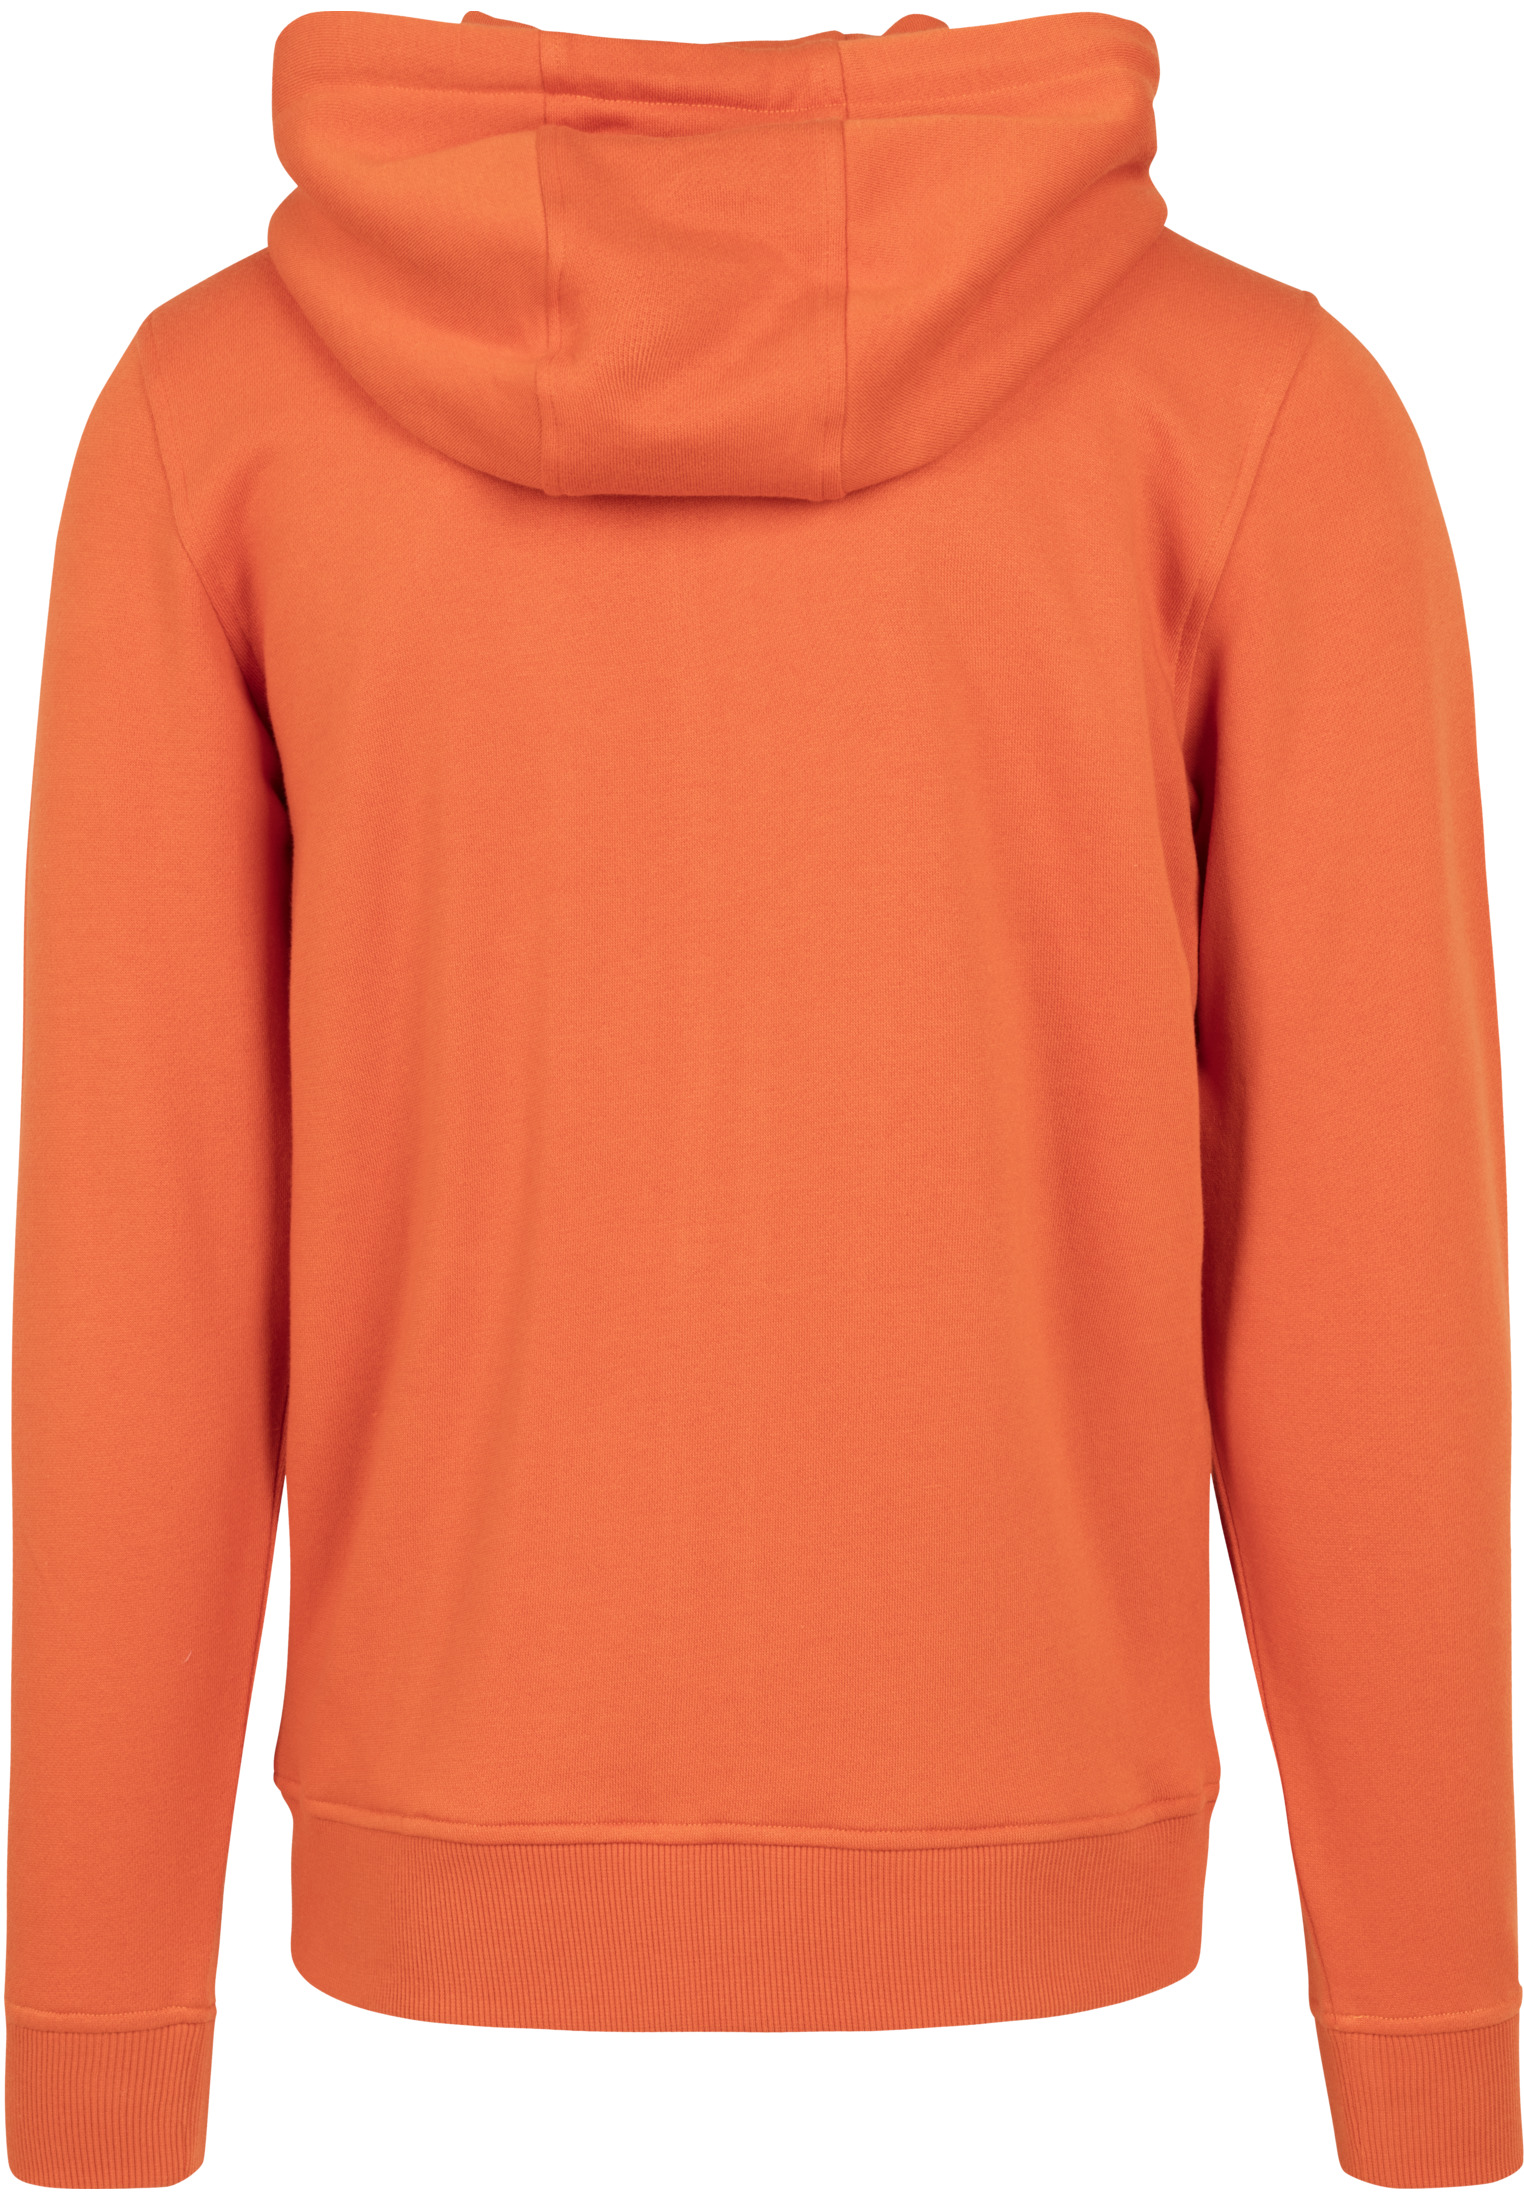 Zip Hoodies Basic Zip Hoody in Farbe rust orange